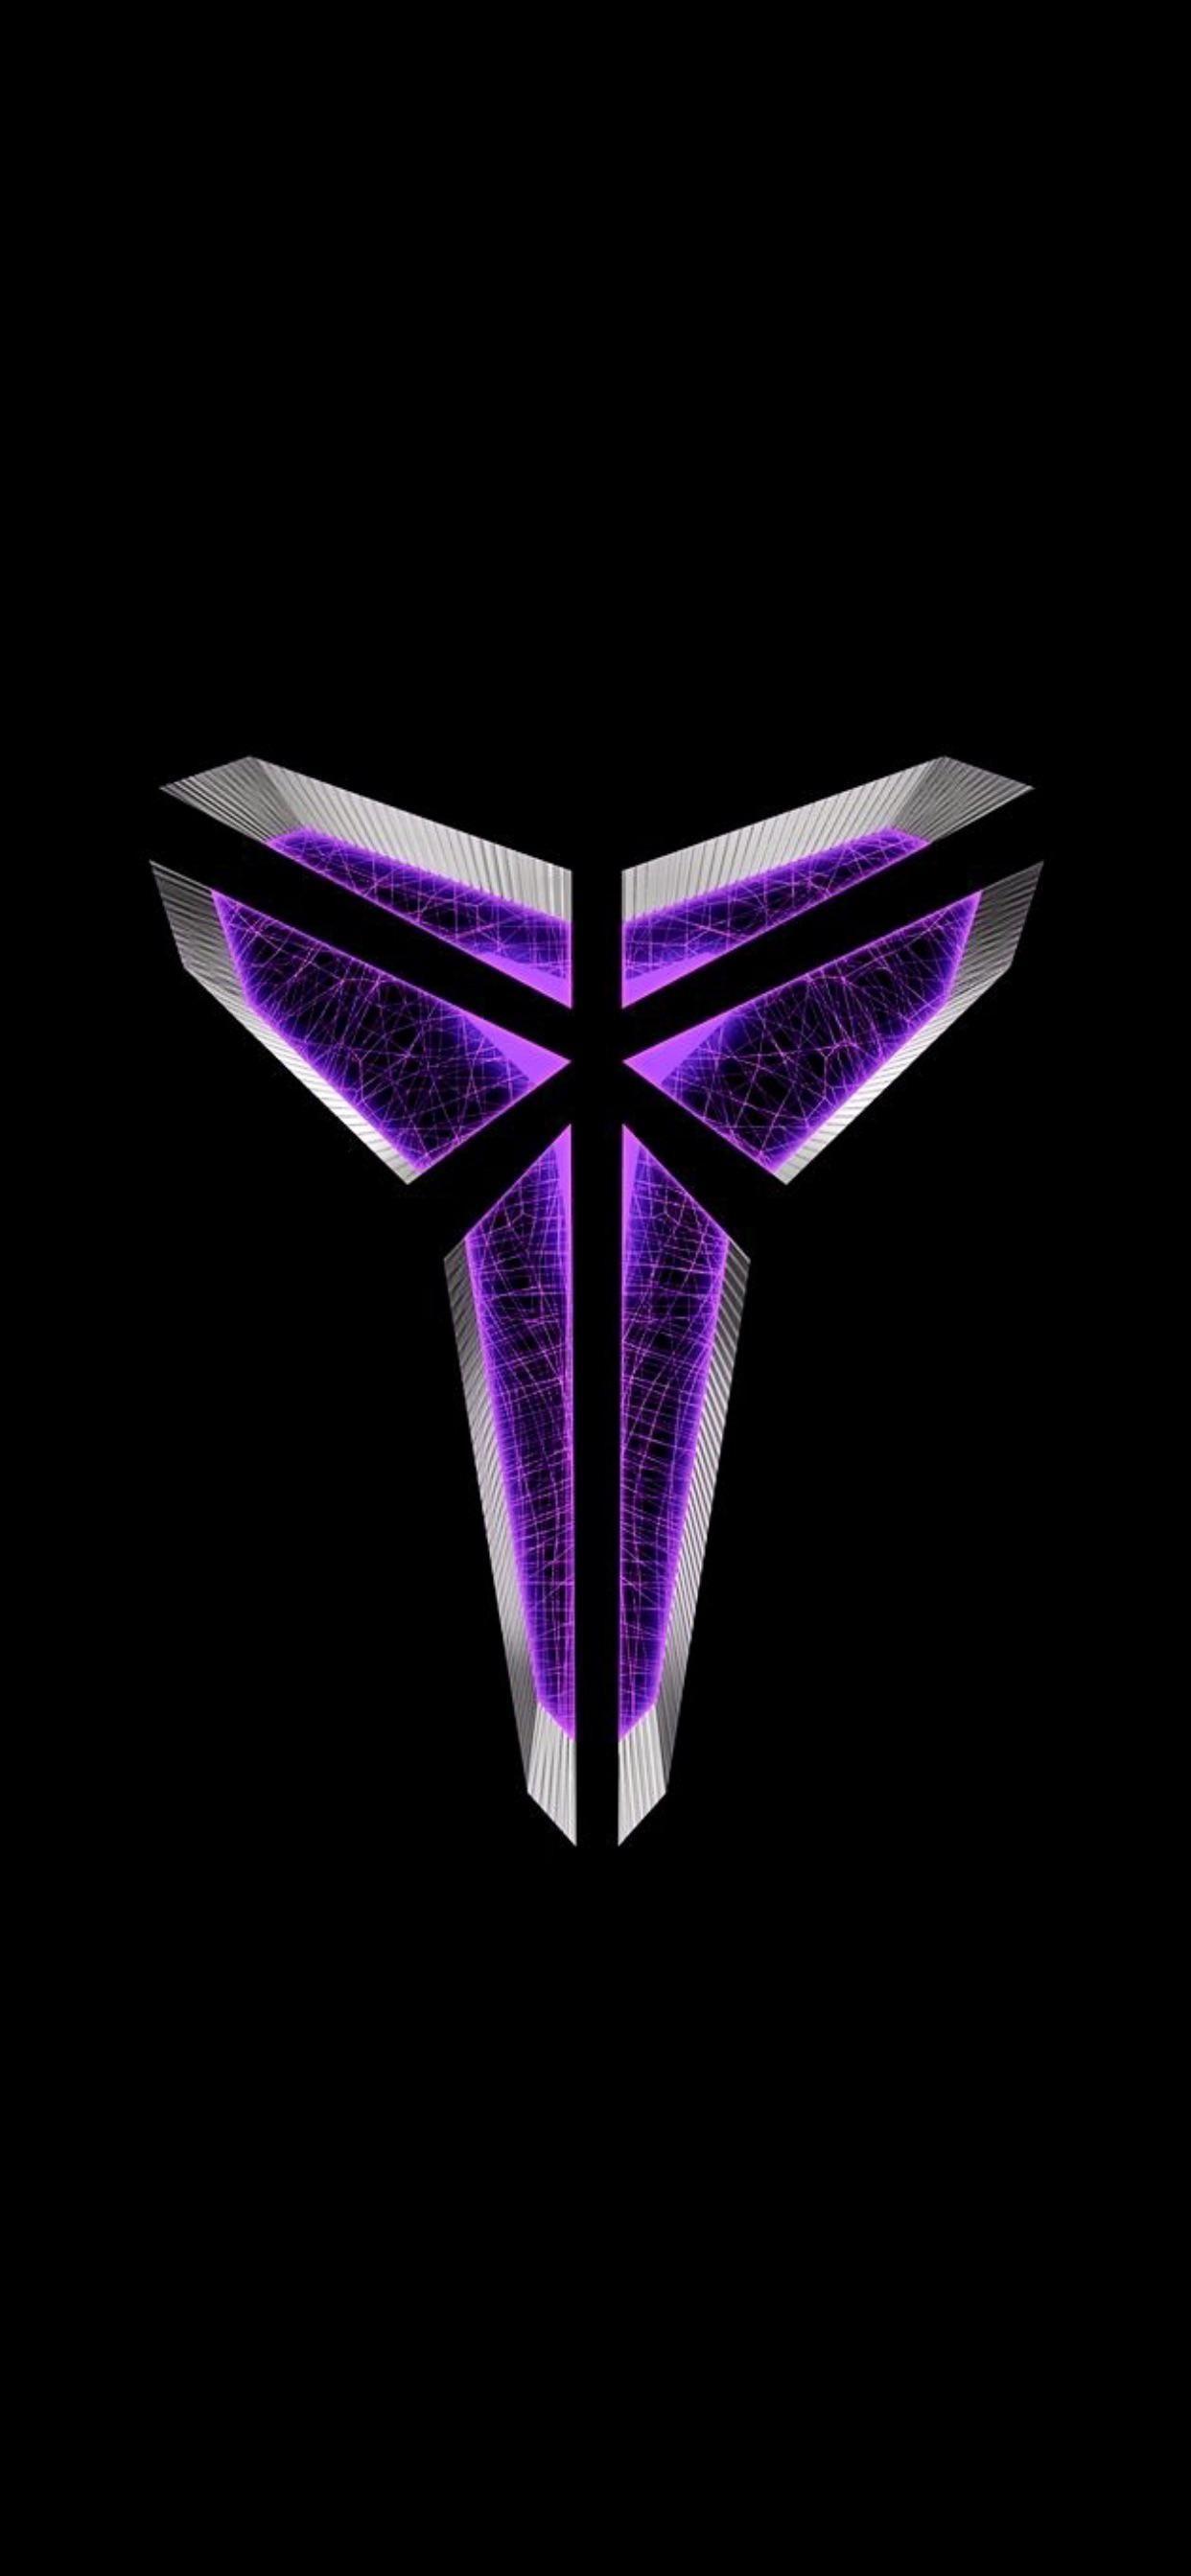 In Memory Of Kobe Heres A Purple Mamba Logo Bryant